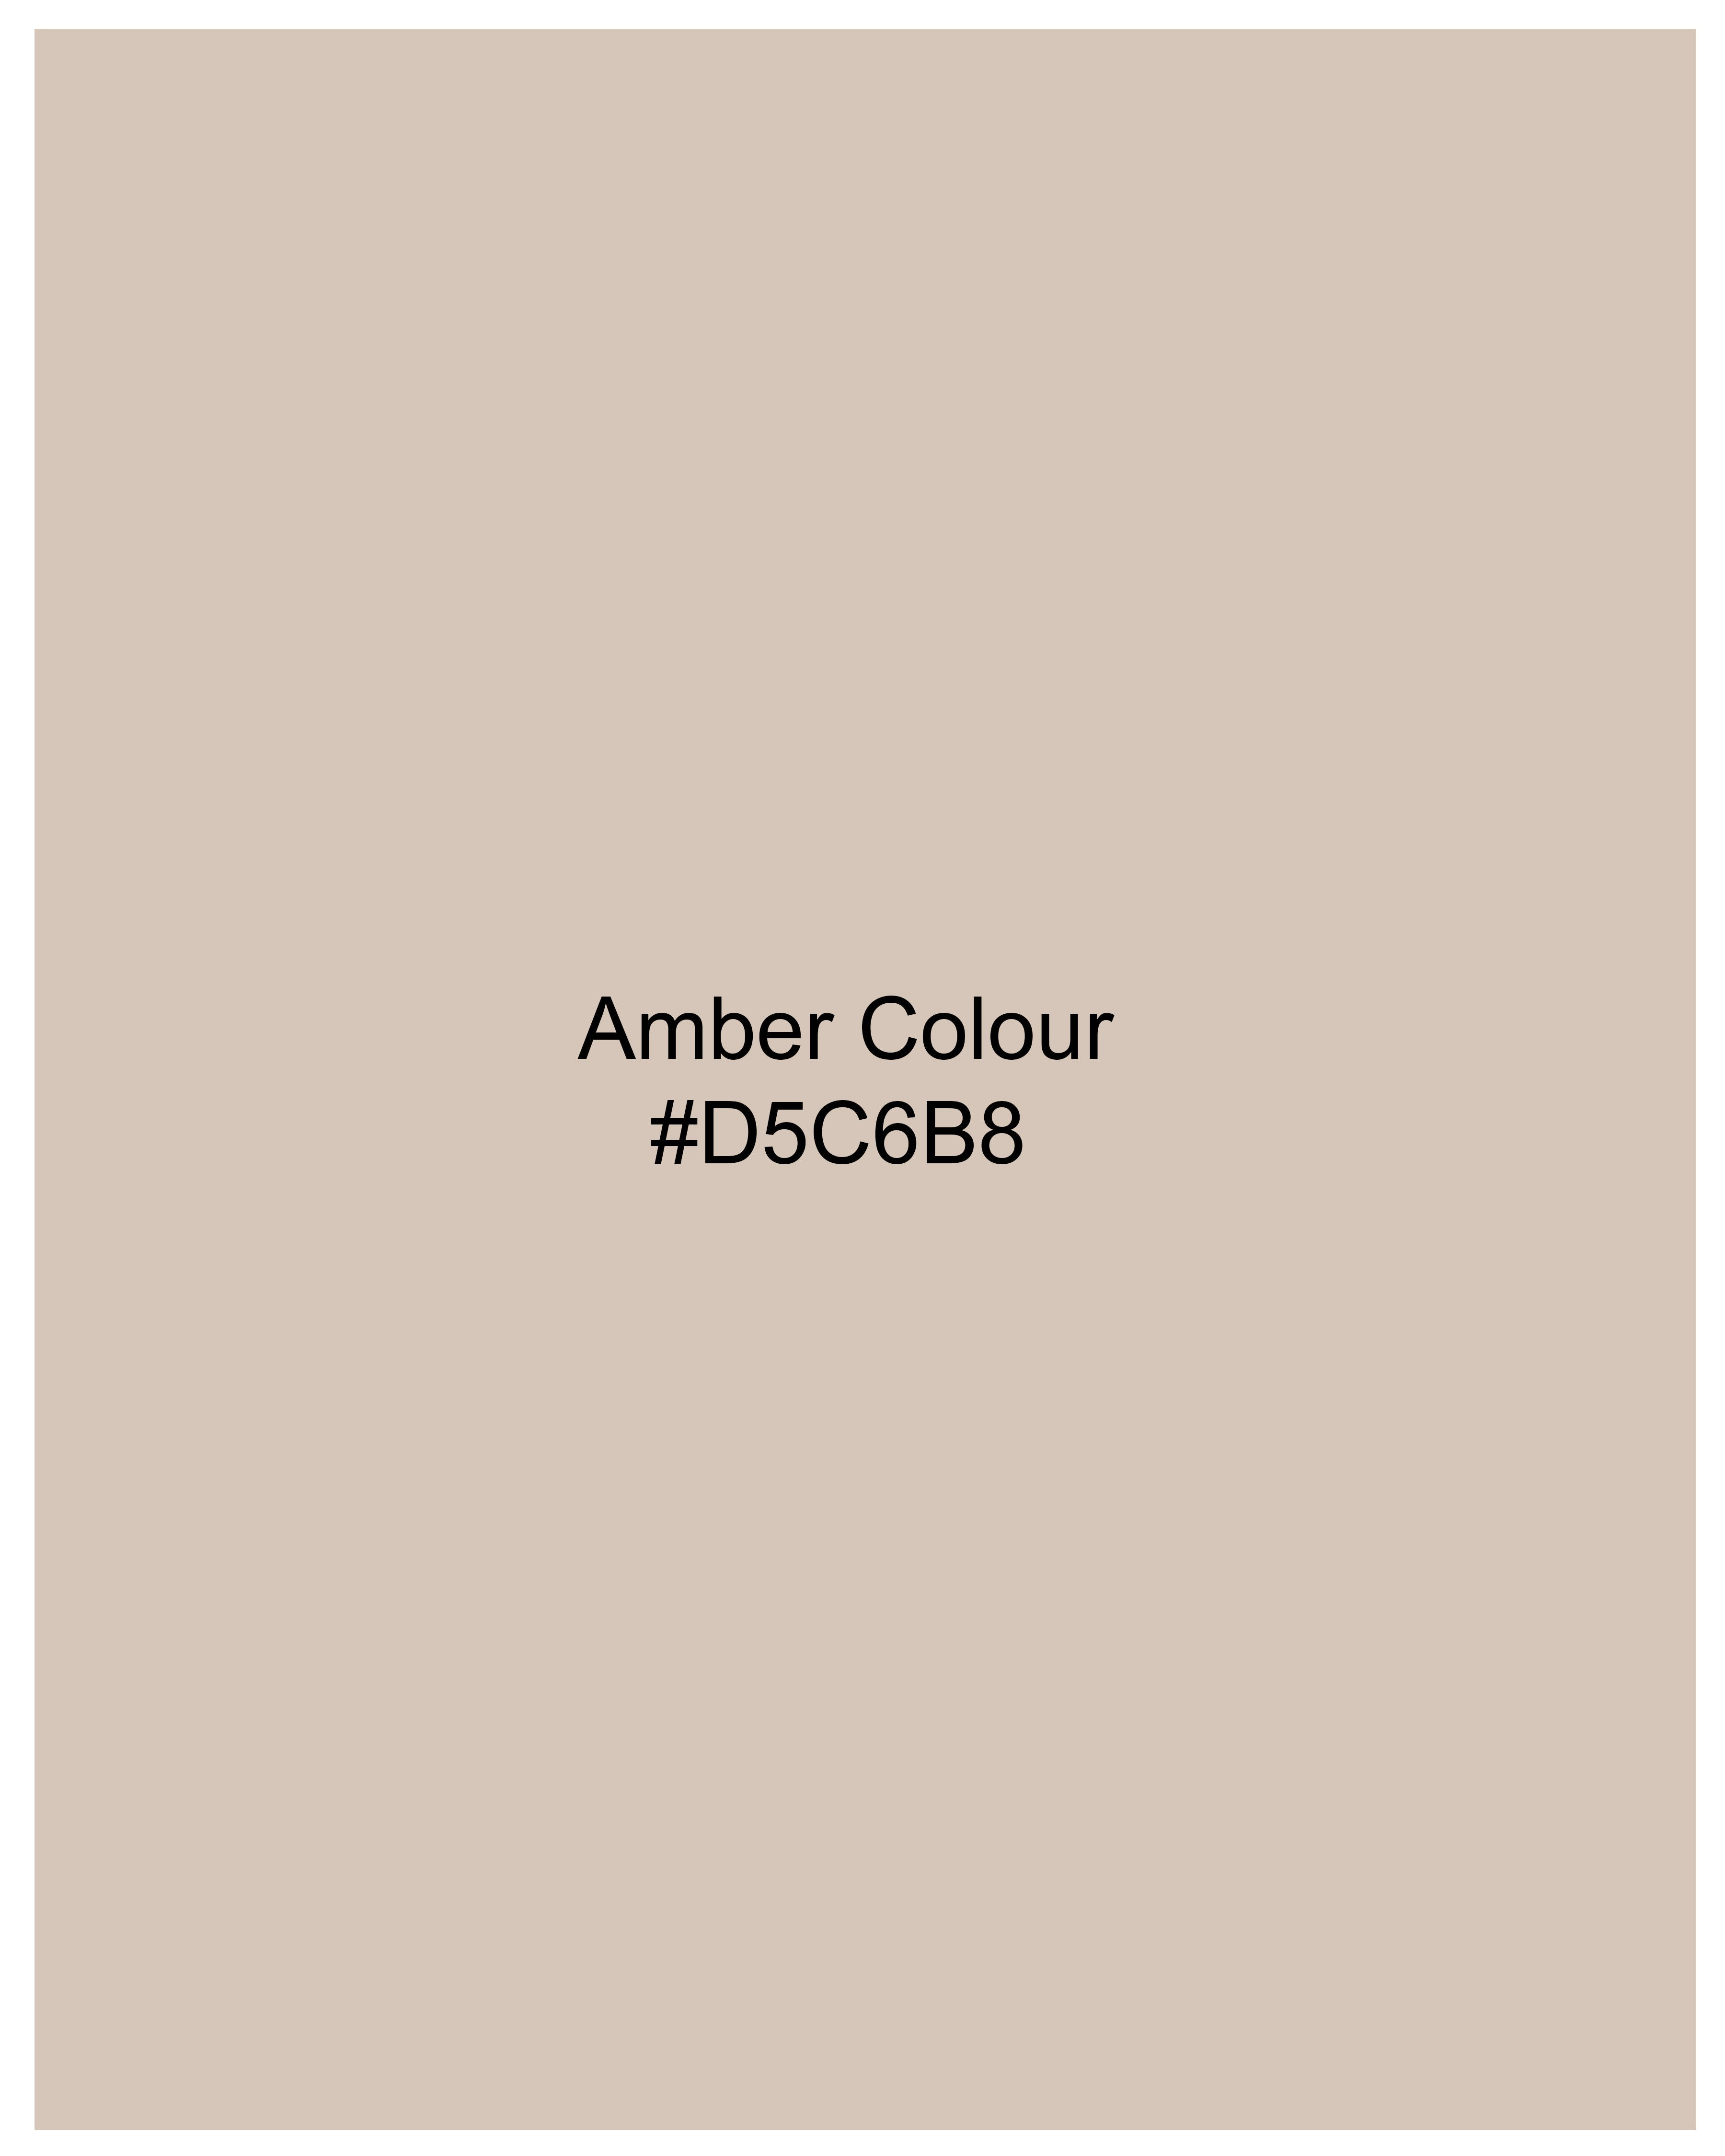 Amber Brown Crop Top With Pleated Premium Cotton WTP002-32, WTP002-34, WTP002-36, WTP002-38, WTP002-40, WTP002-42